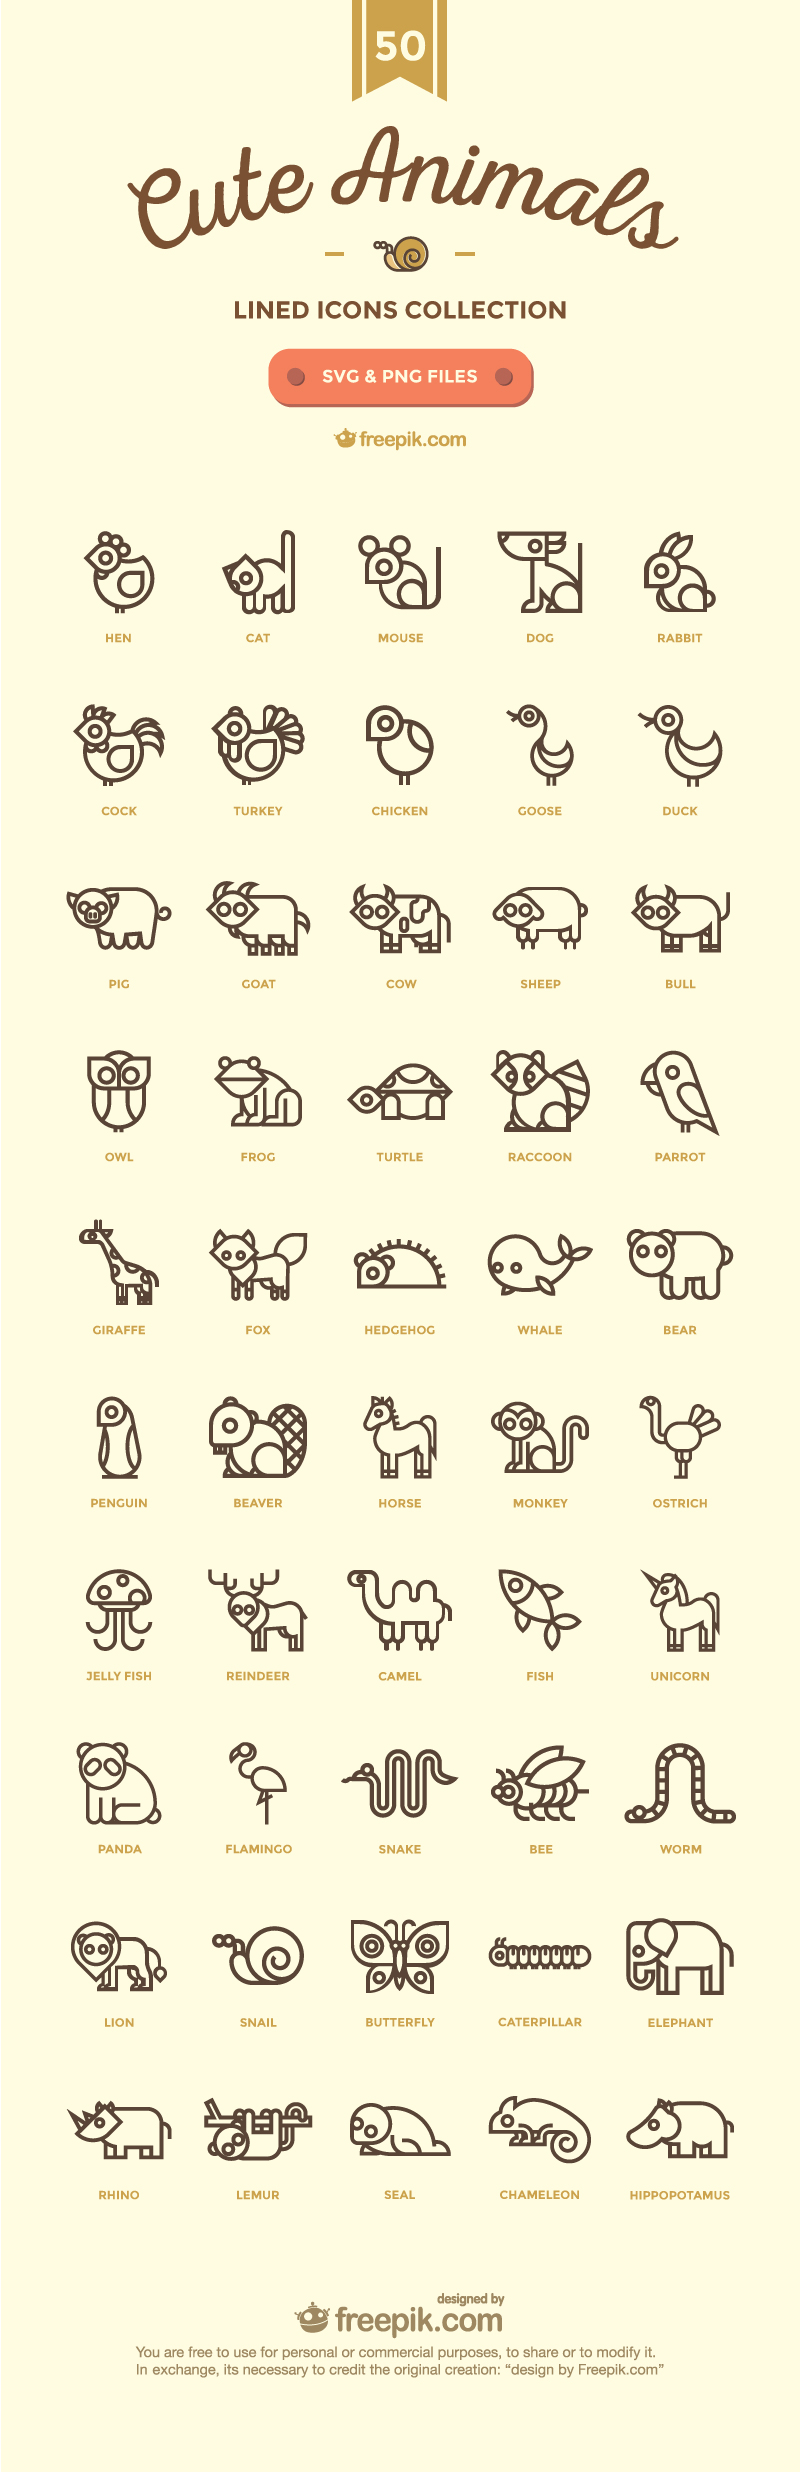 50个可爱的矢量动物图标下载【SVG、PNG】